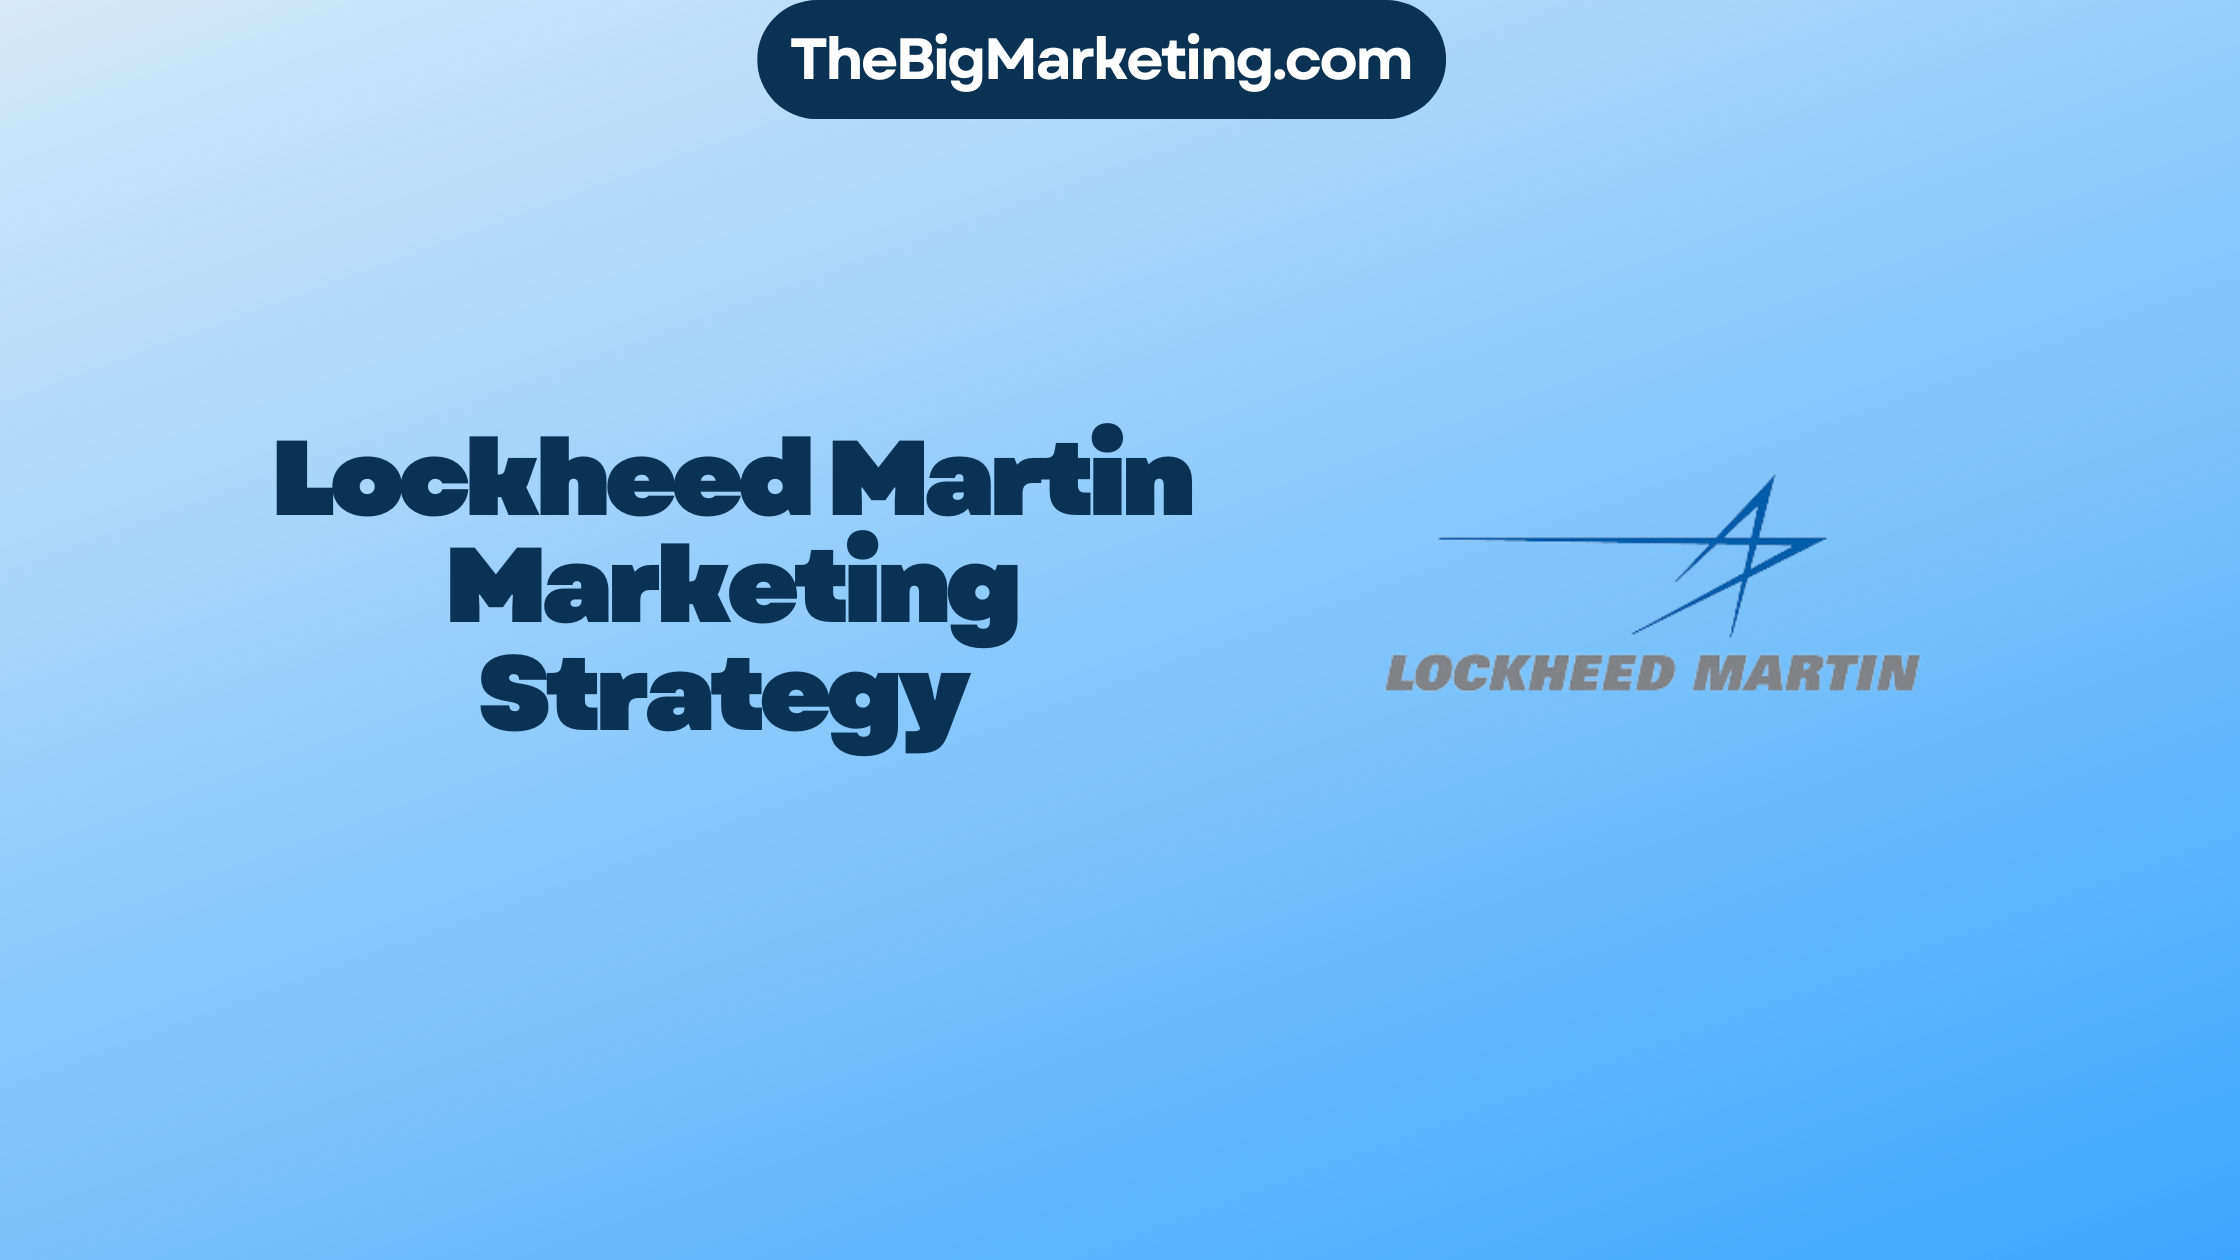 ockheed-Martin-Marketing-Strategy